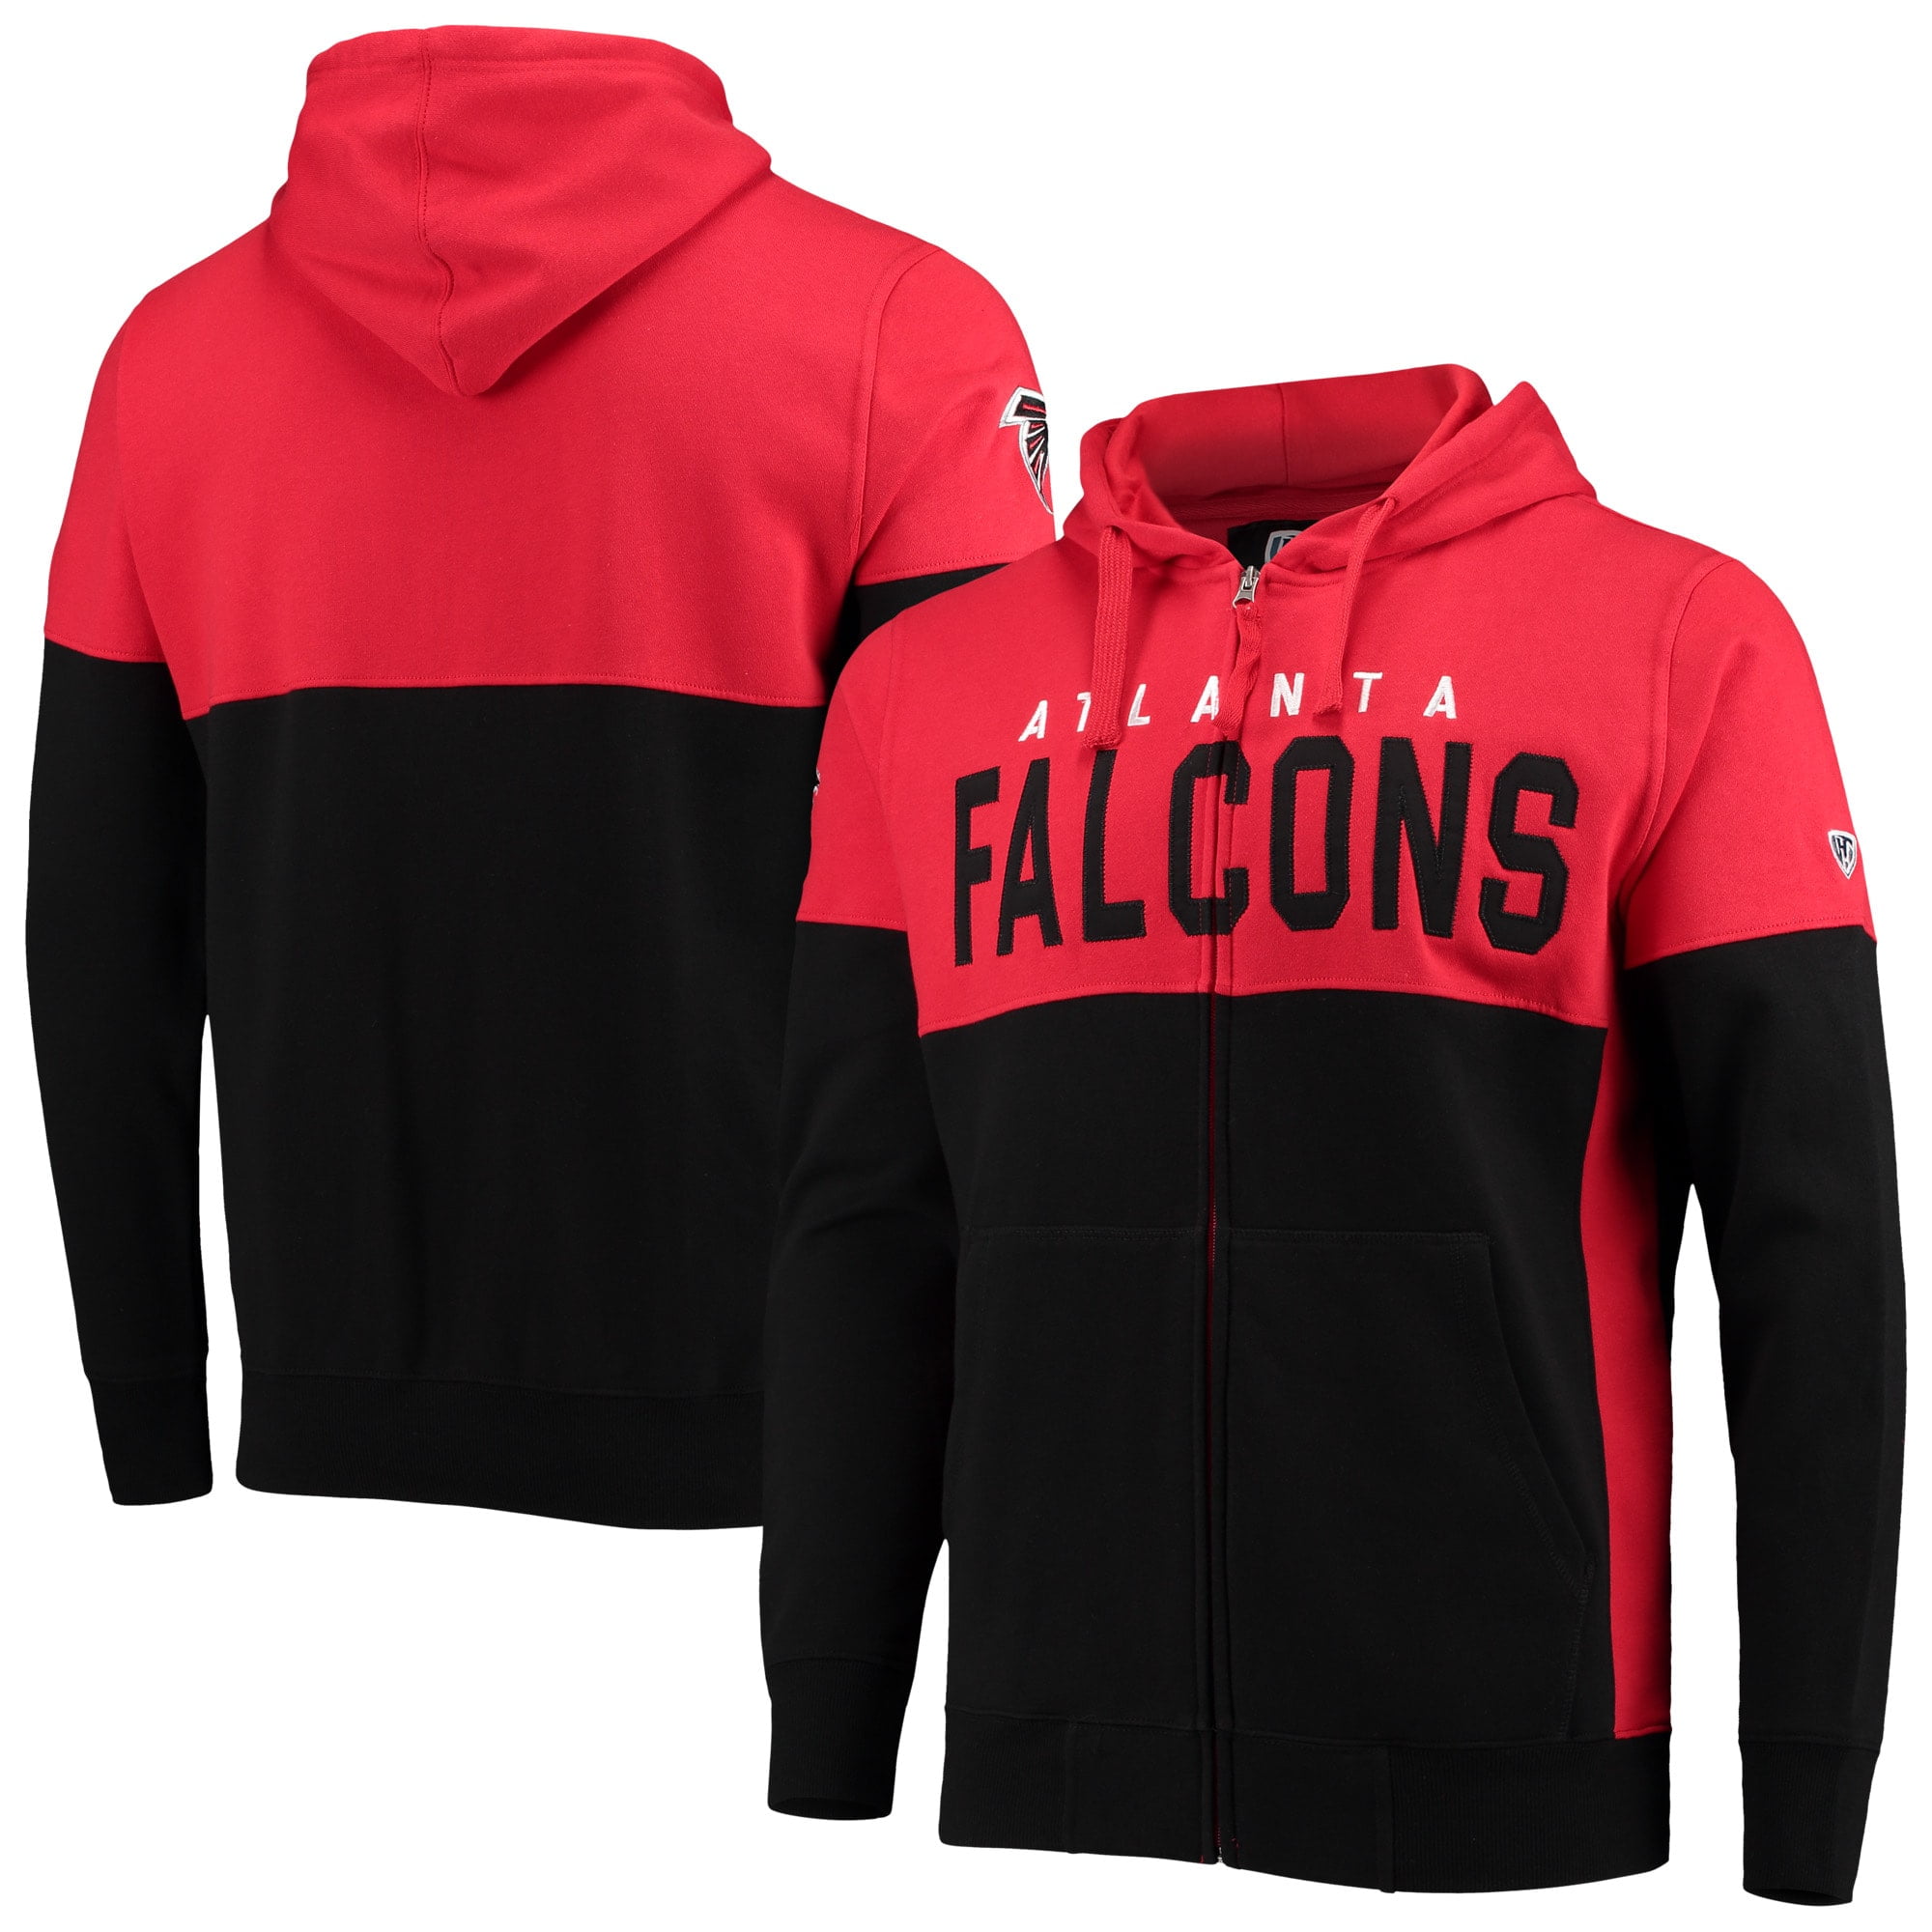 falcons zip hoodie